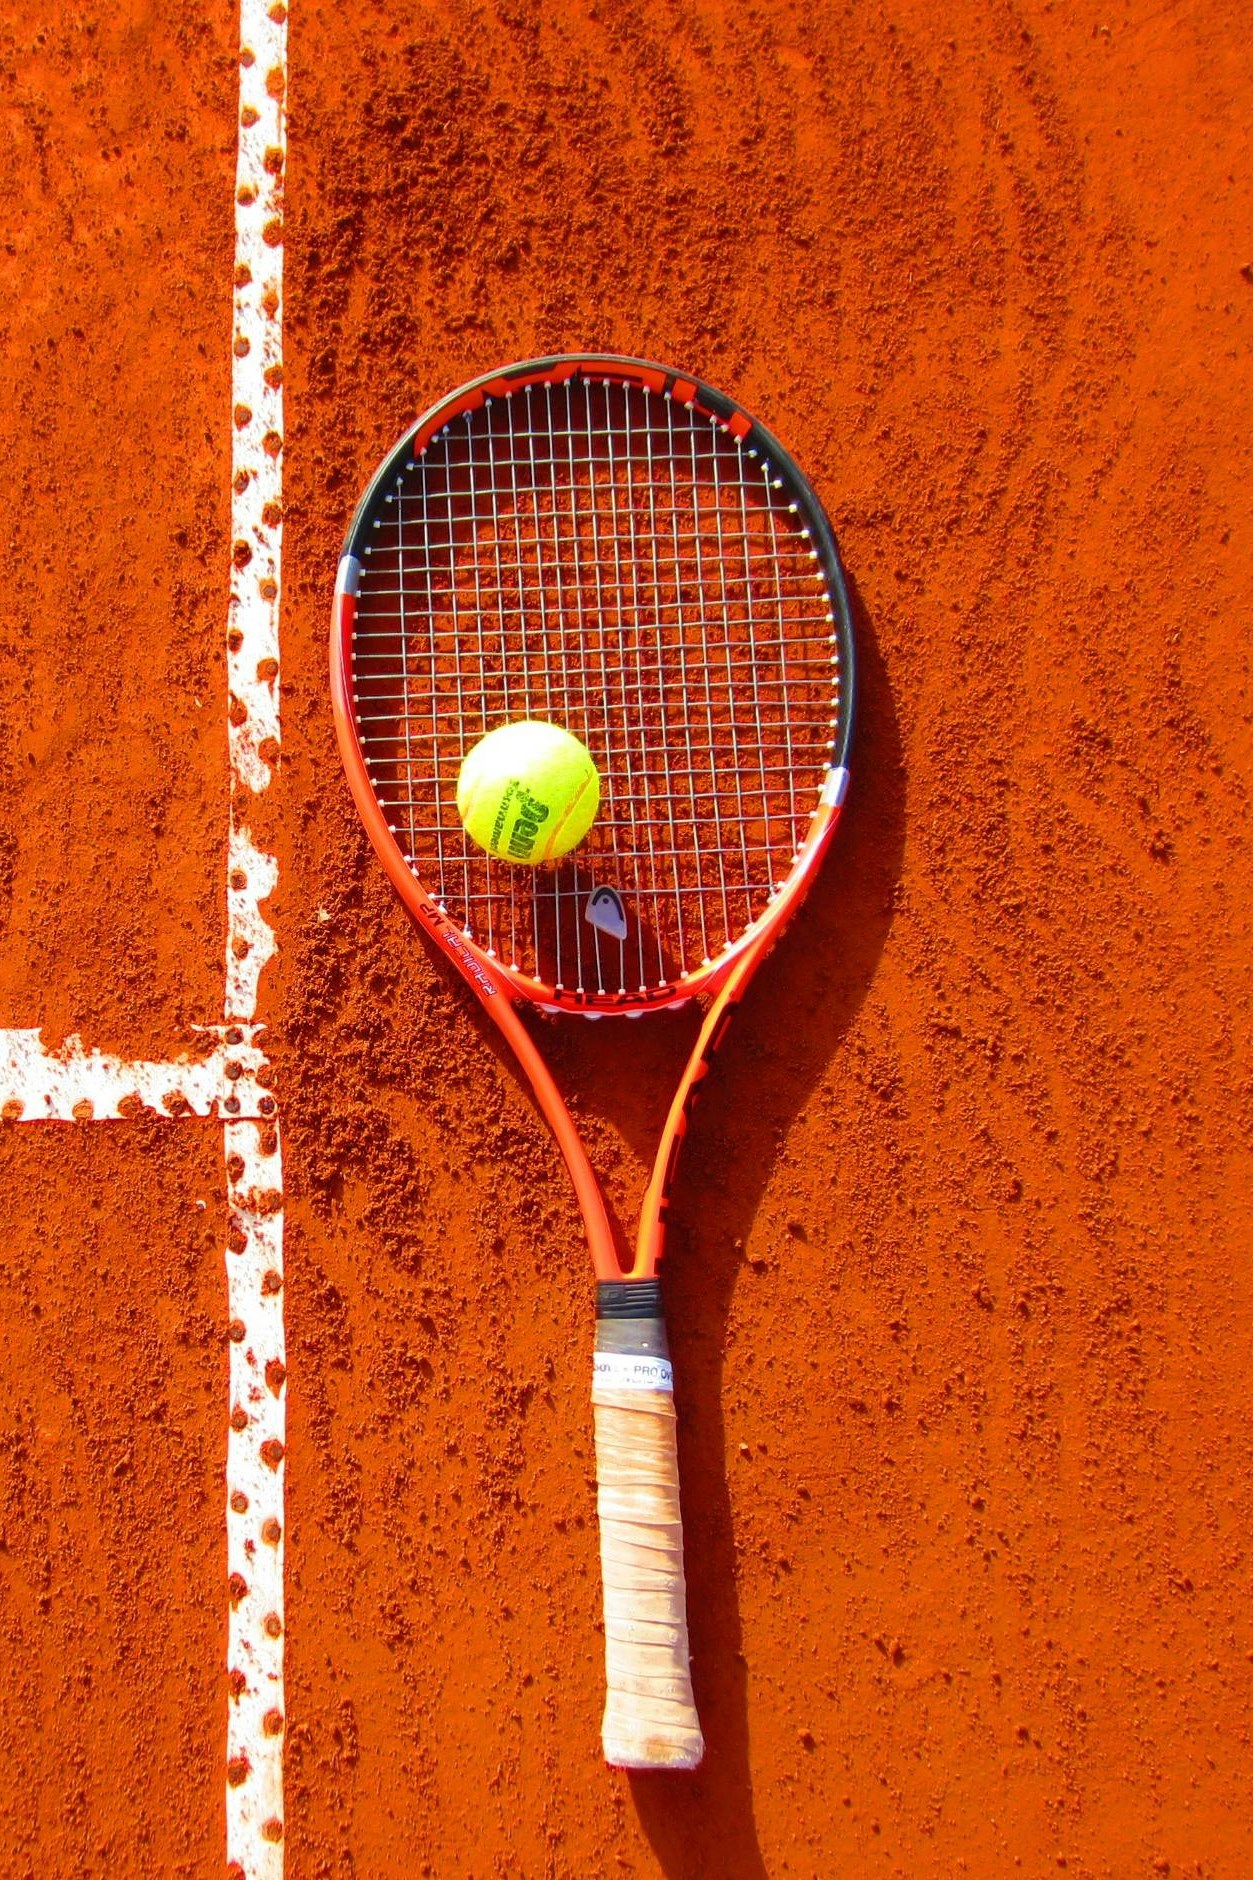 Tennis Raquet on the ground